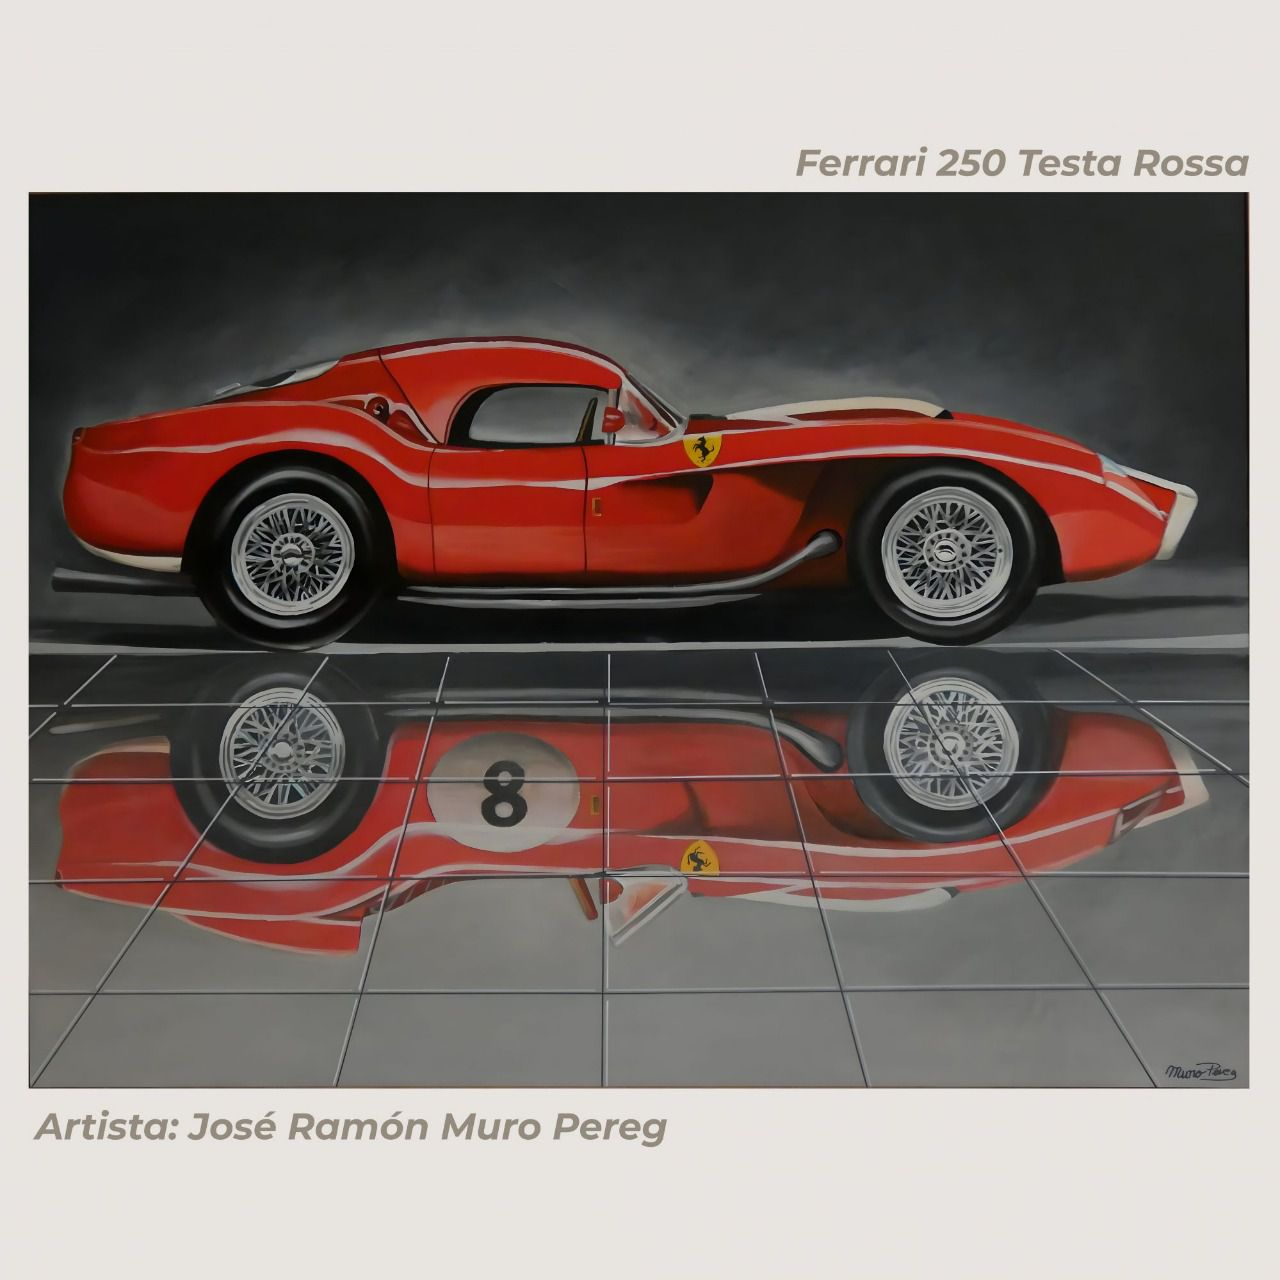 Cuadro de automoción: Ferrari 250 Testa Rossa (Artista: José Ramón Muro Pereg)